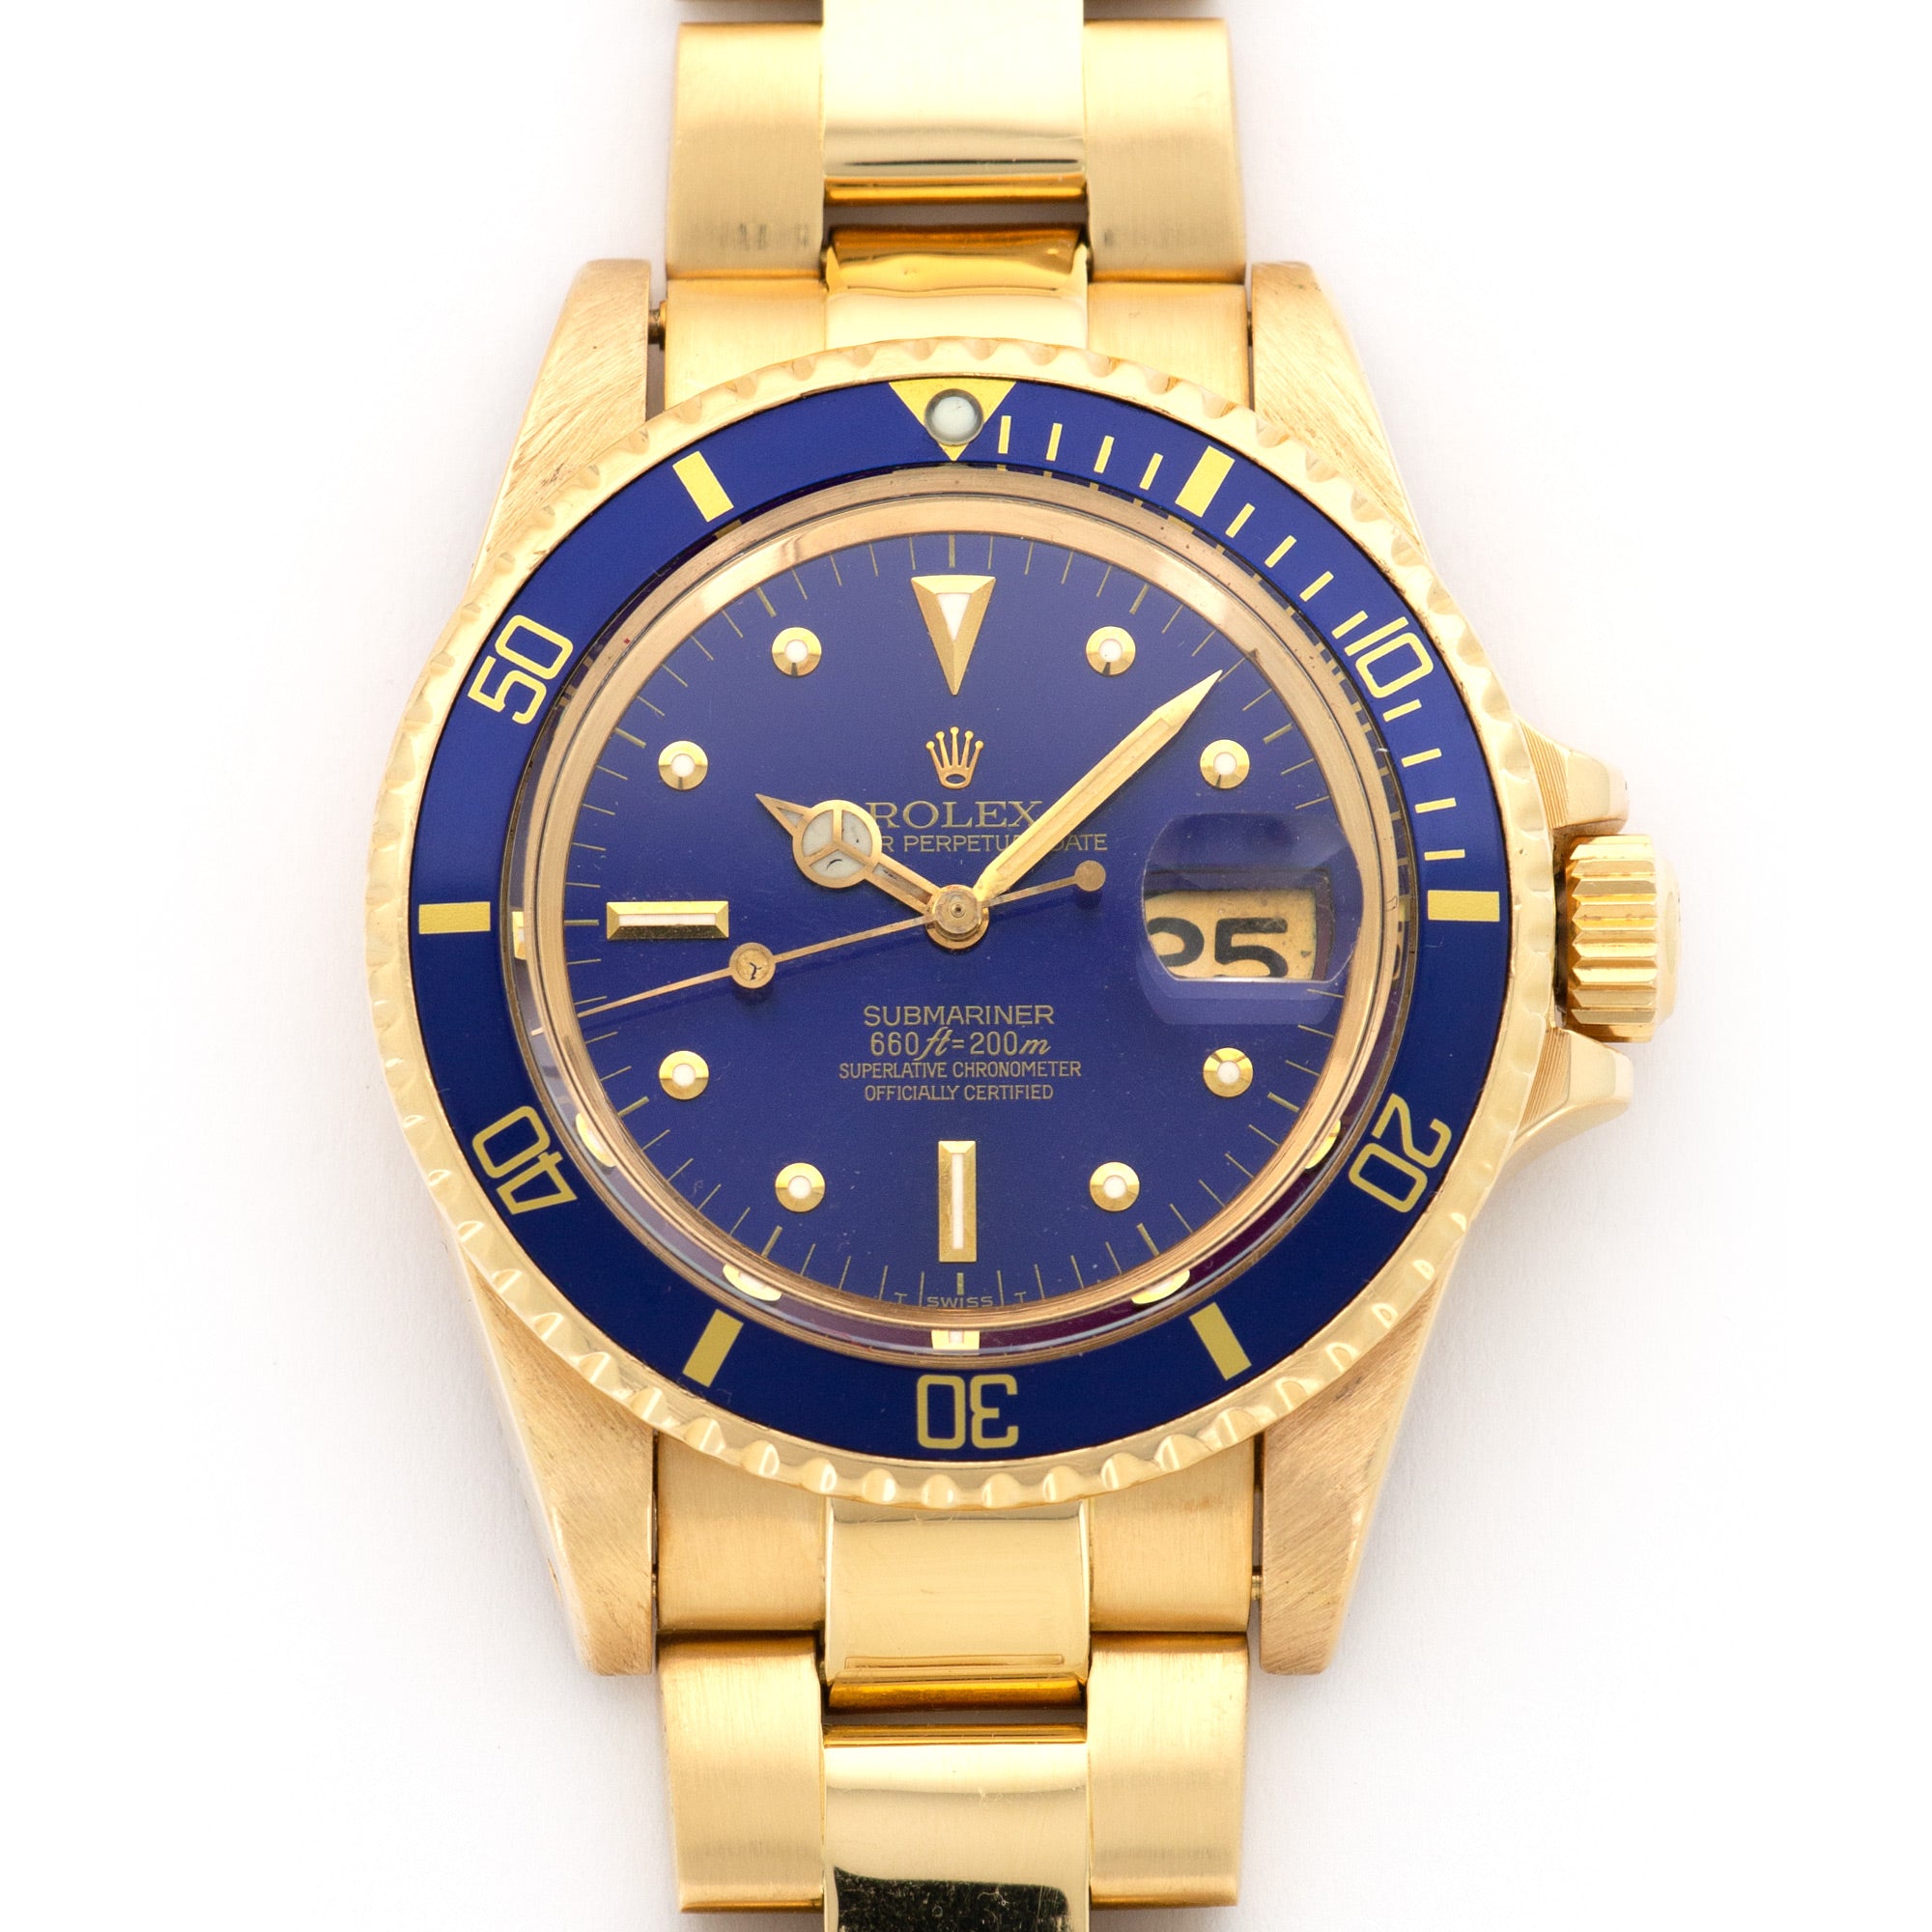 Rolex - Rolex Yellow Gold Submariner Watch Ref. 1680 - The Keystone Watches